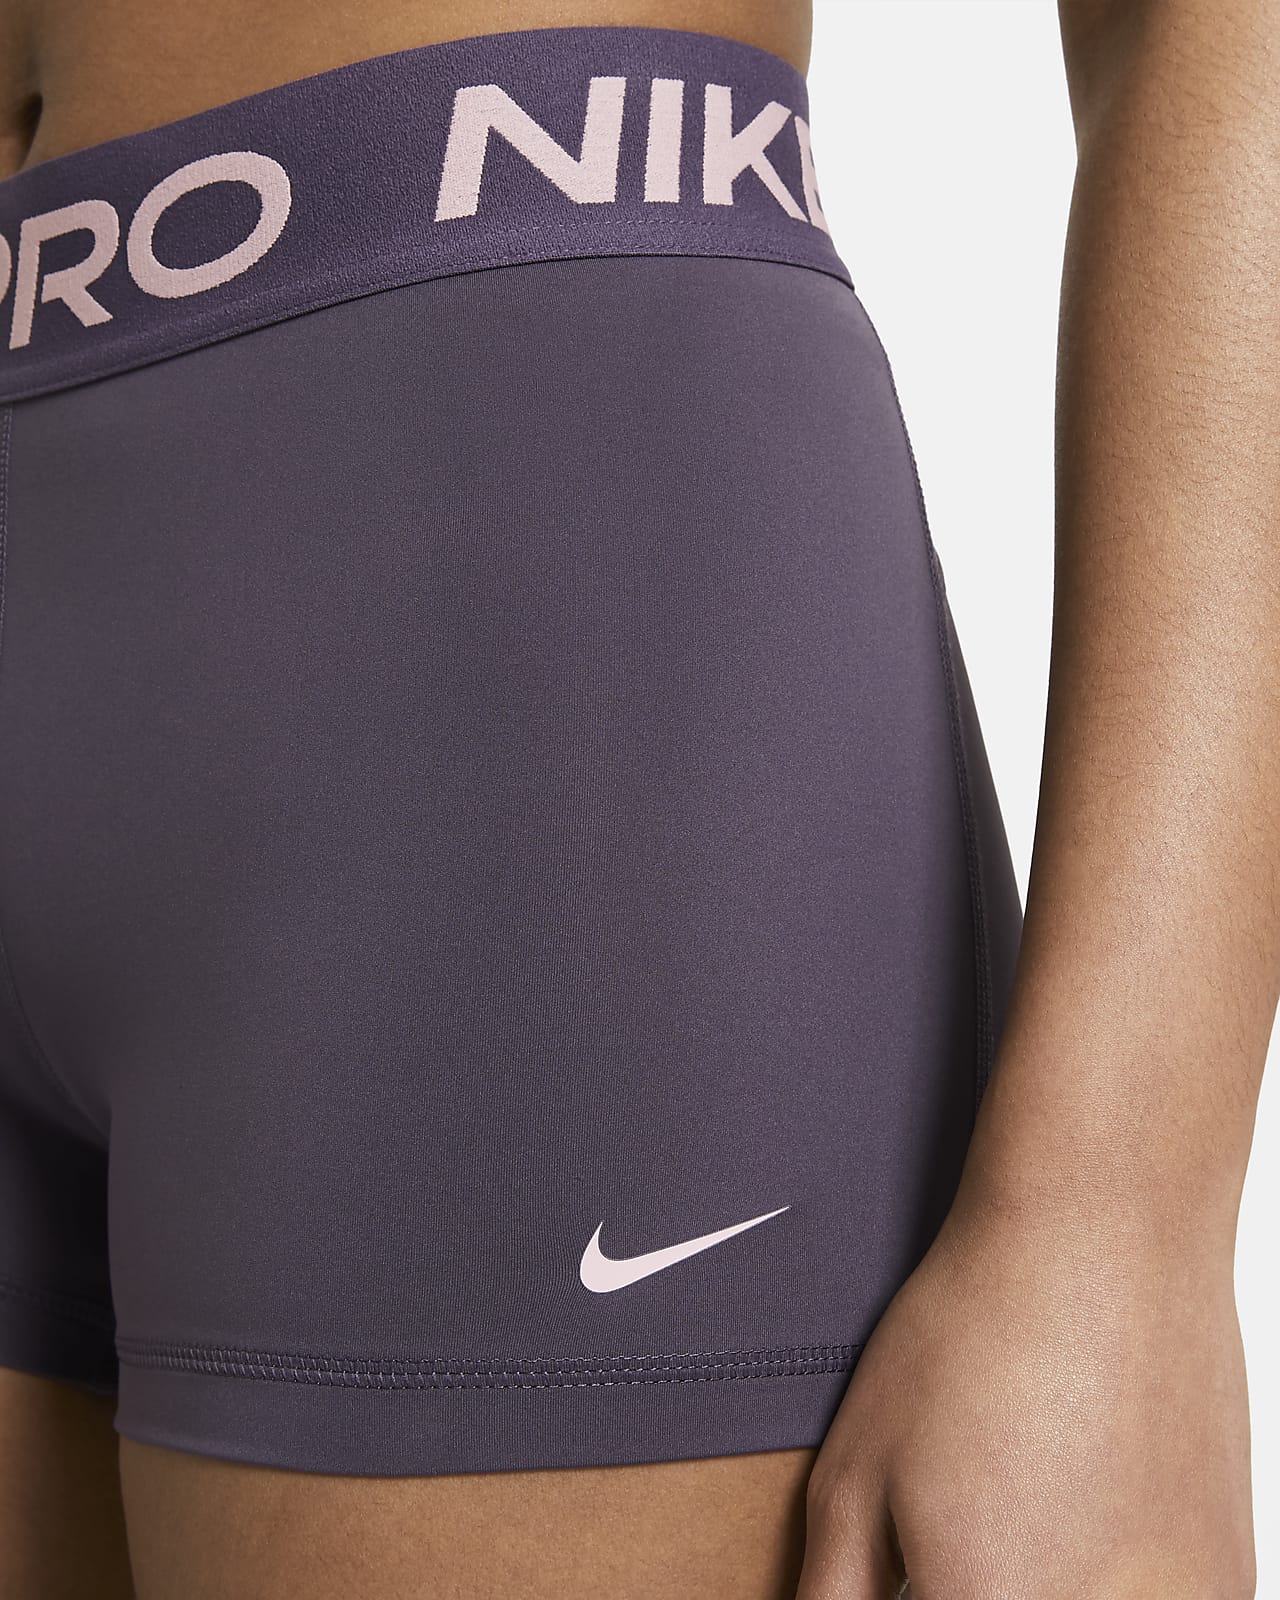 nike air pros shorts